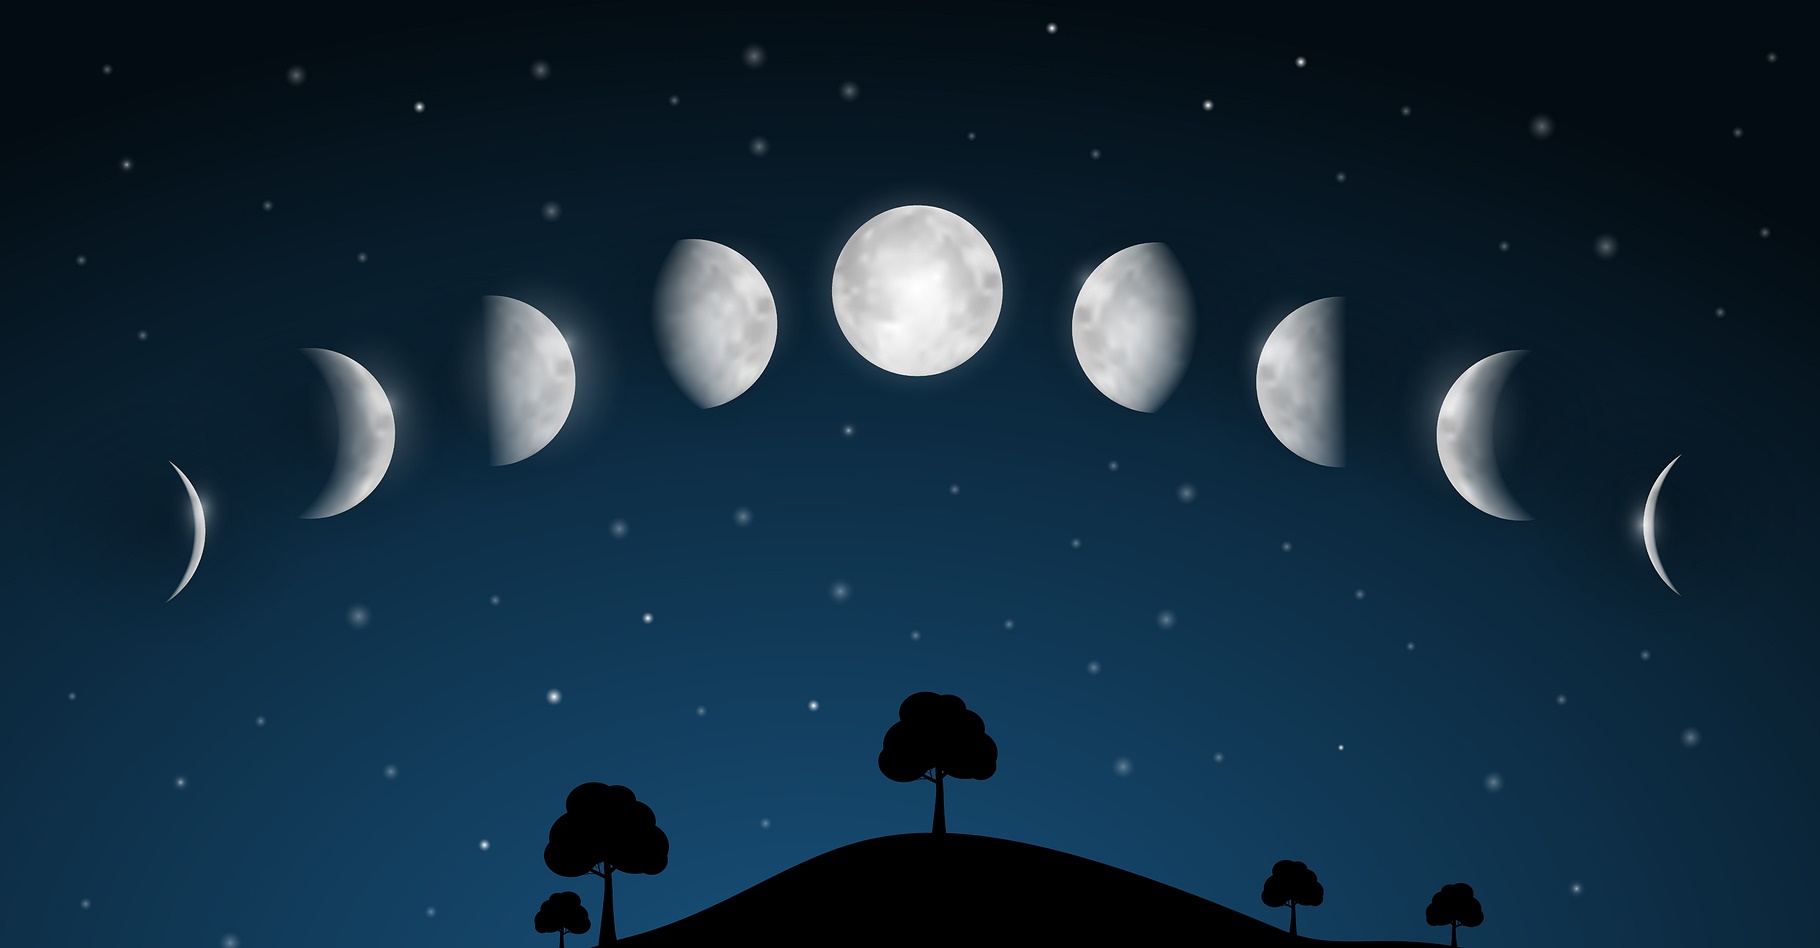 Les phases de la Lune et le cycle lunaire fascinent depuis… la nuit des temps ! © mejnak, Shutterstock